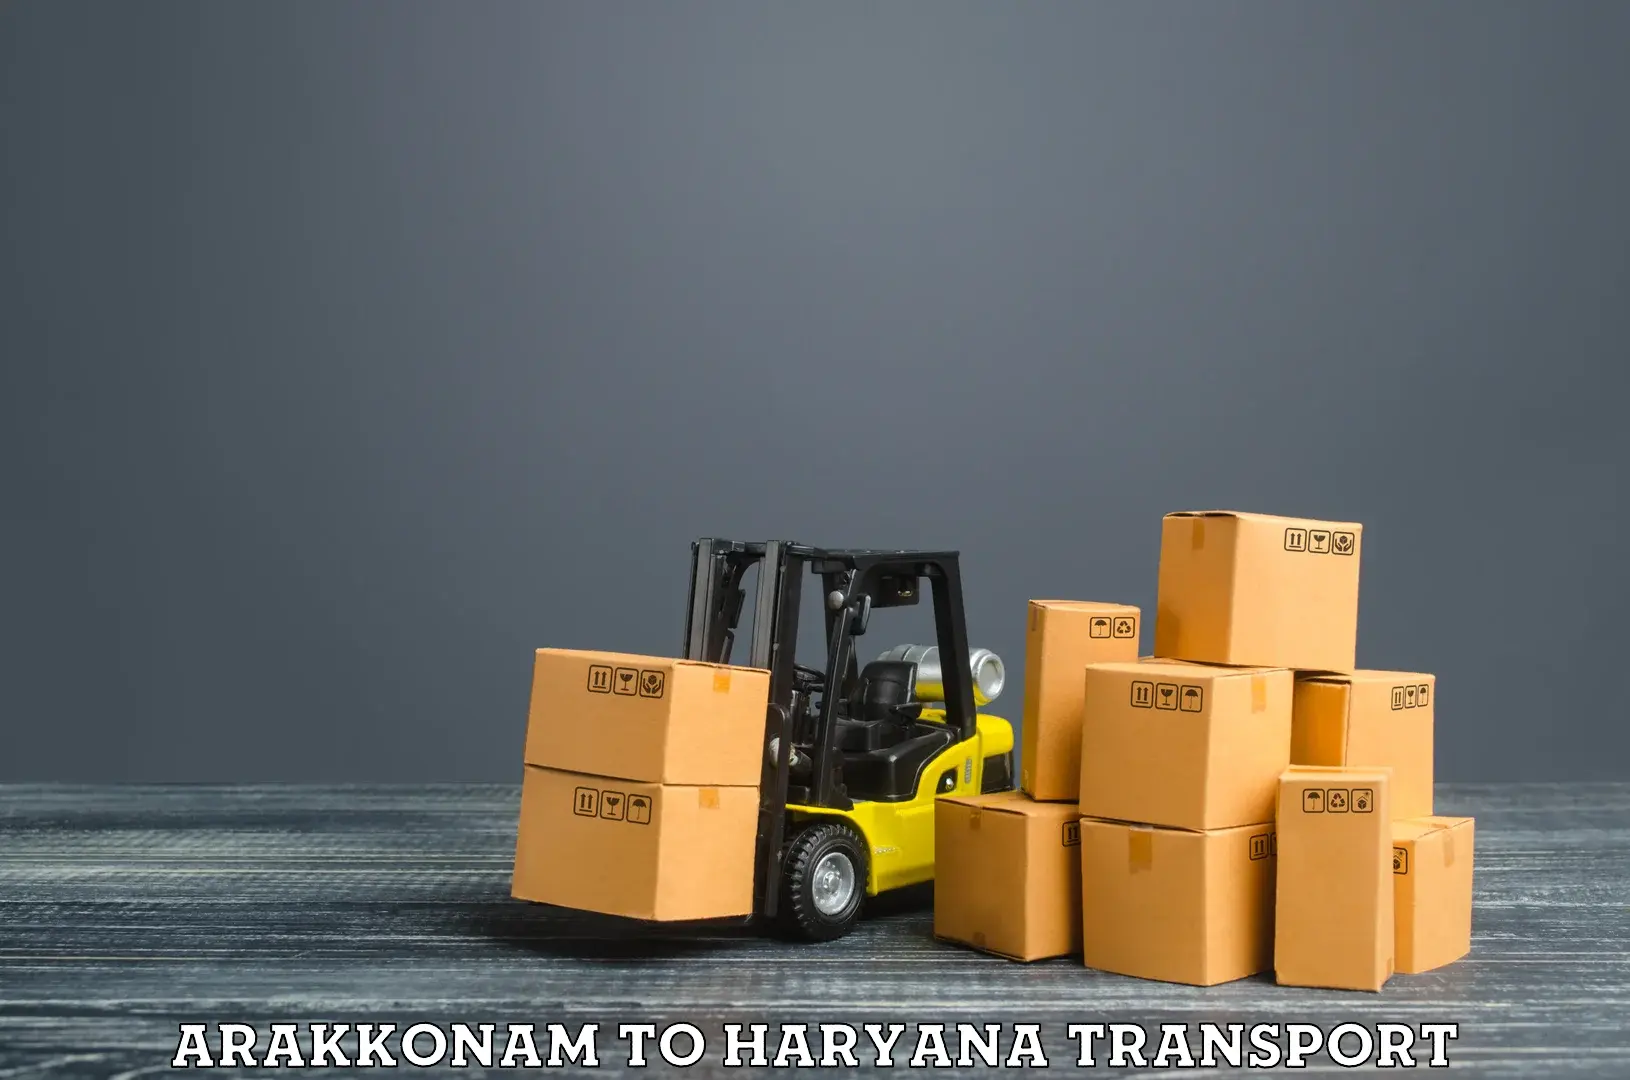 Scooty transport charges Arakkonam to Gurgaon